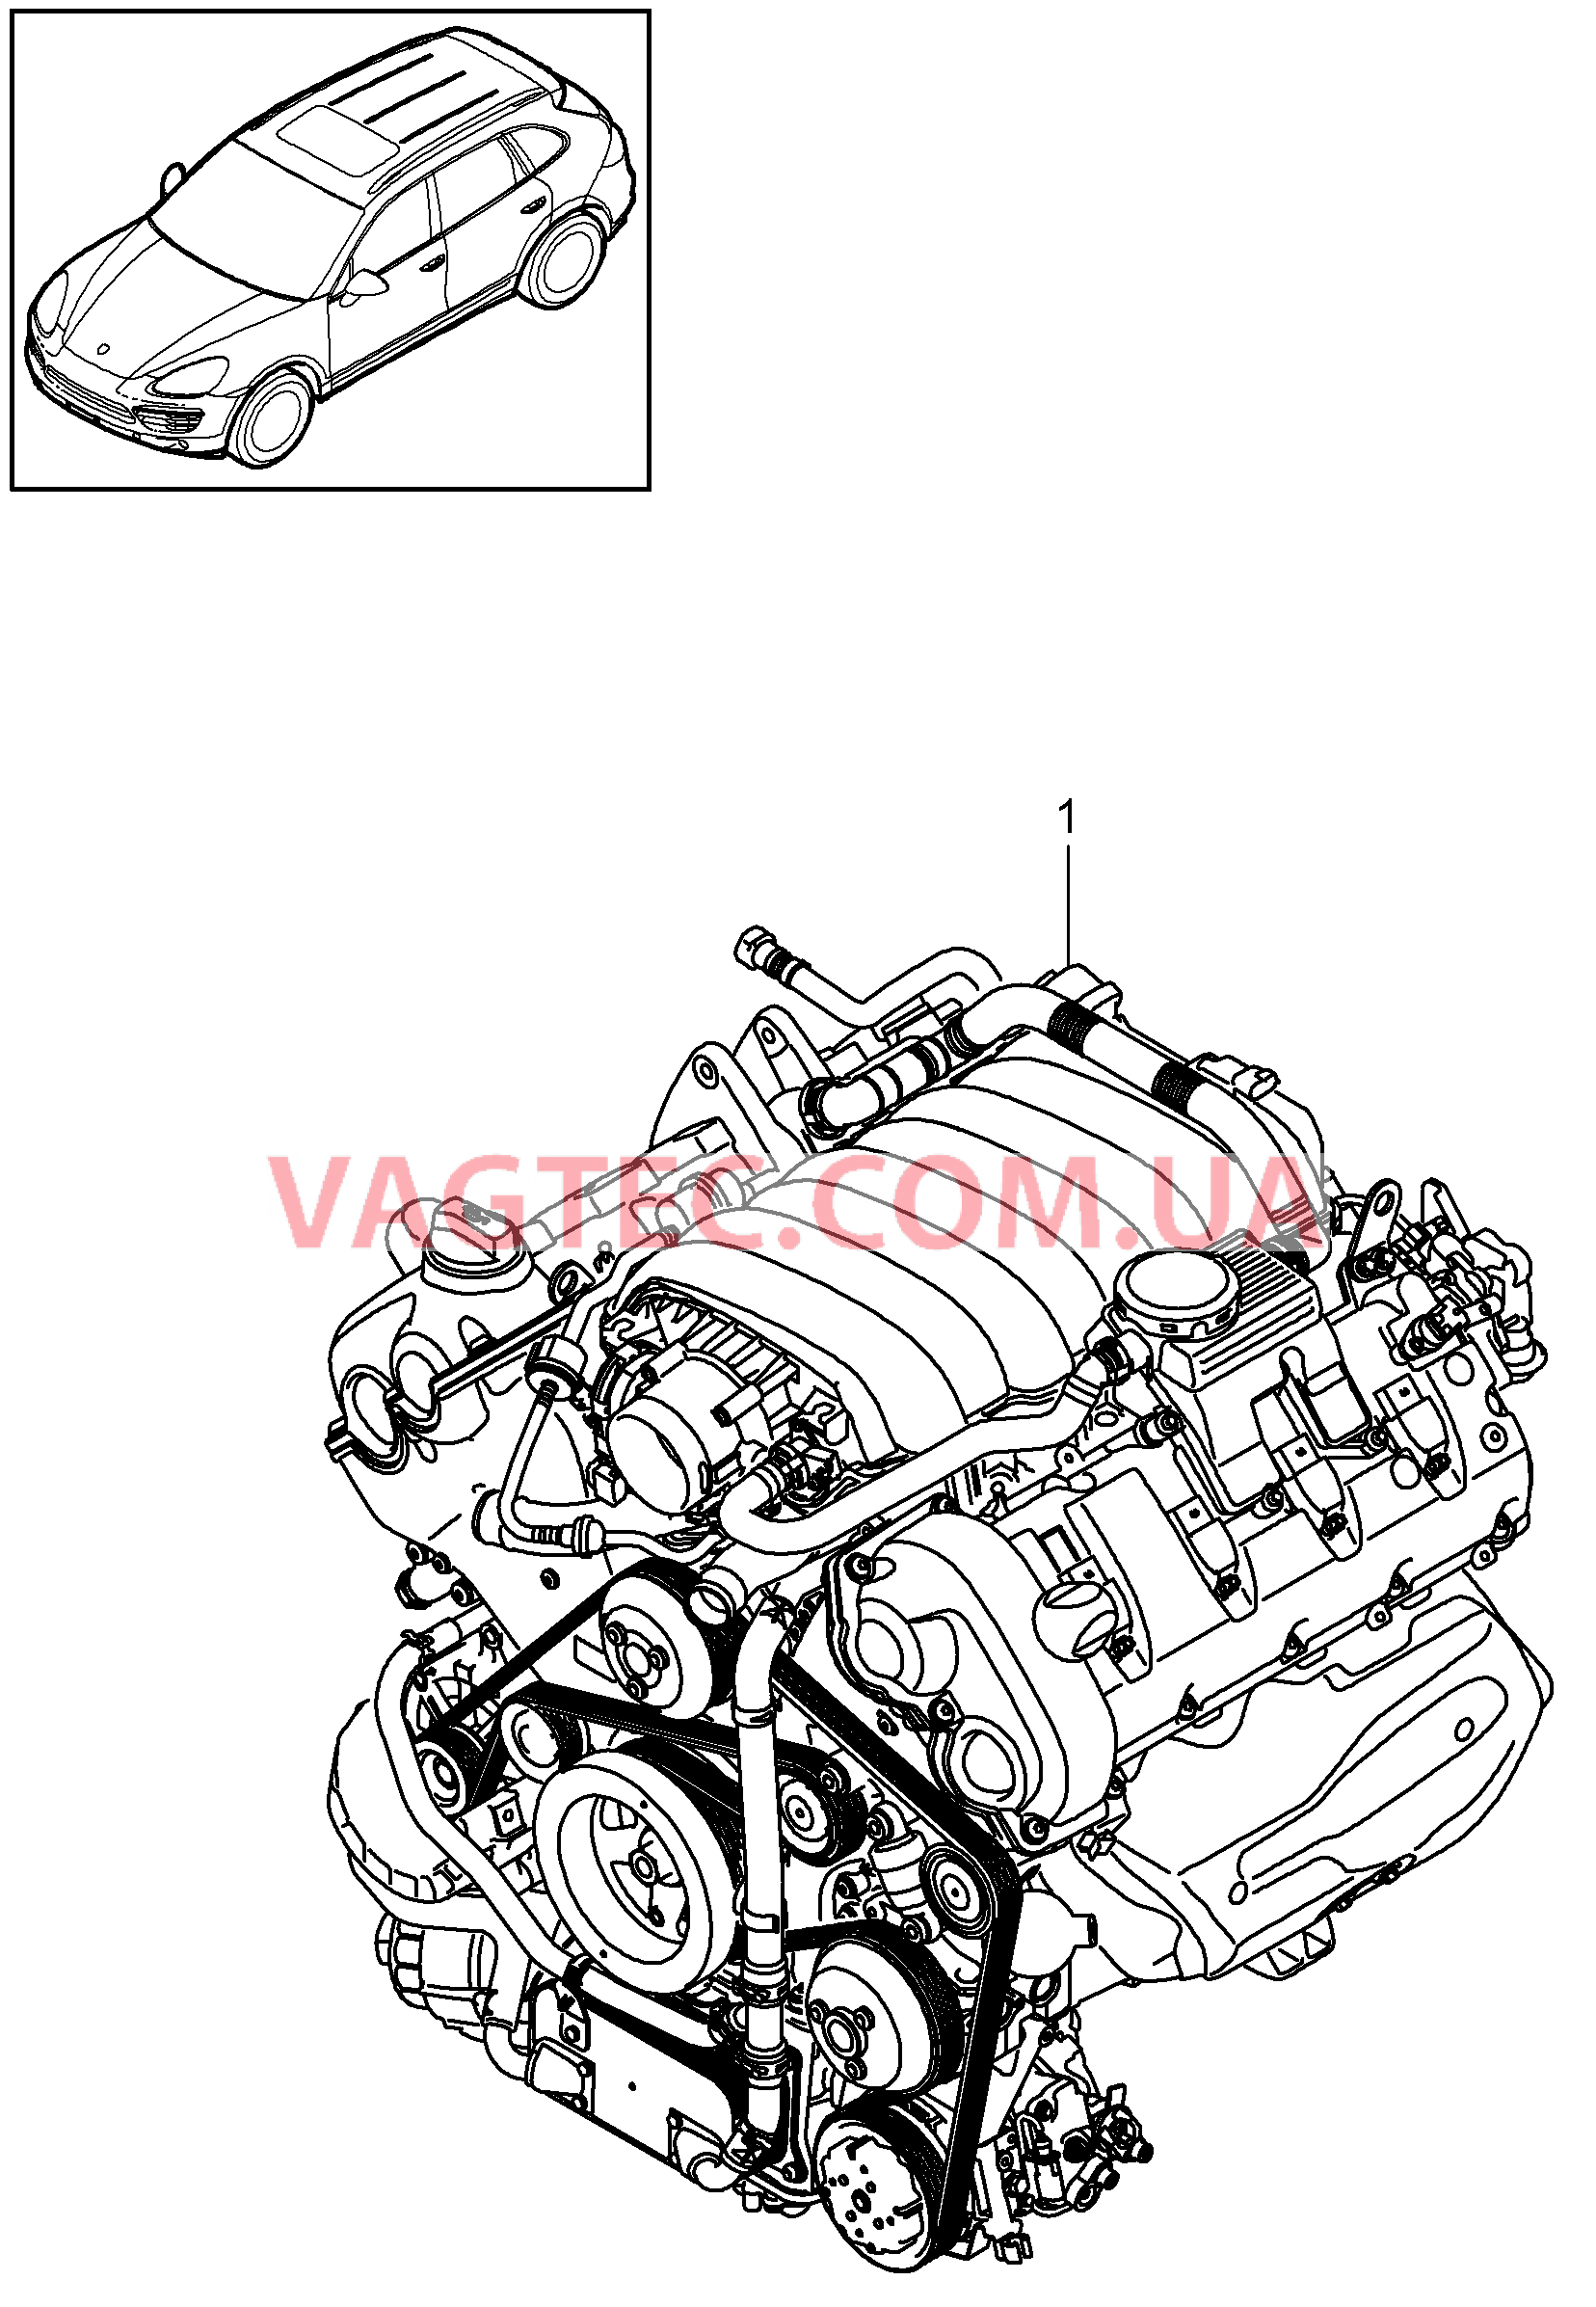 101-000 Запасной двигатель, без, Ведомый диск, TIPTRONIC, без, Компрессор
						
						M48.02/52 для PORSCHE Cayenne 2011-2018USA